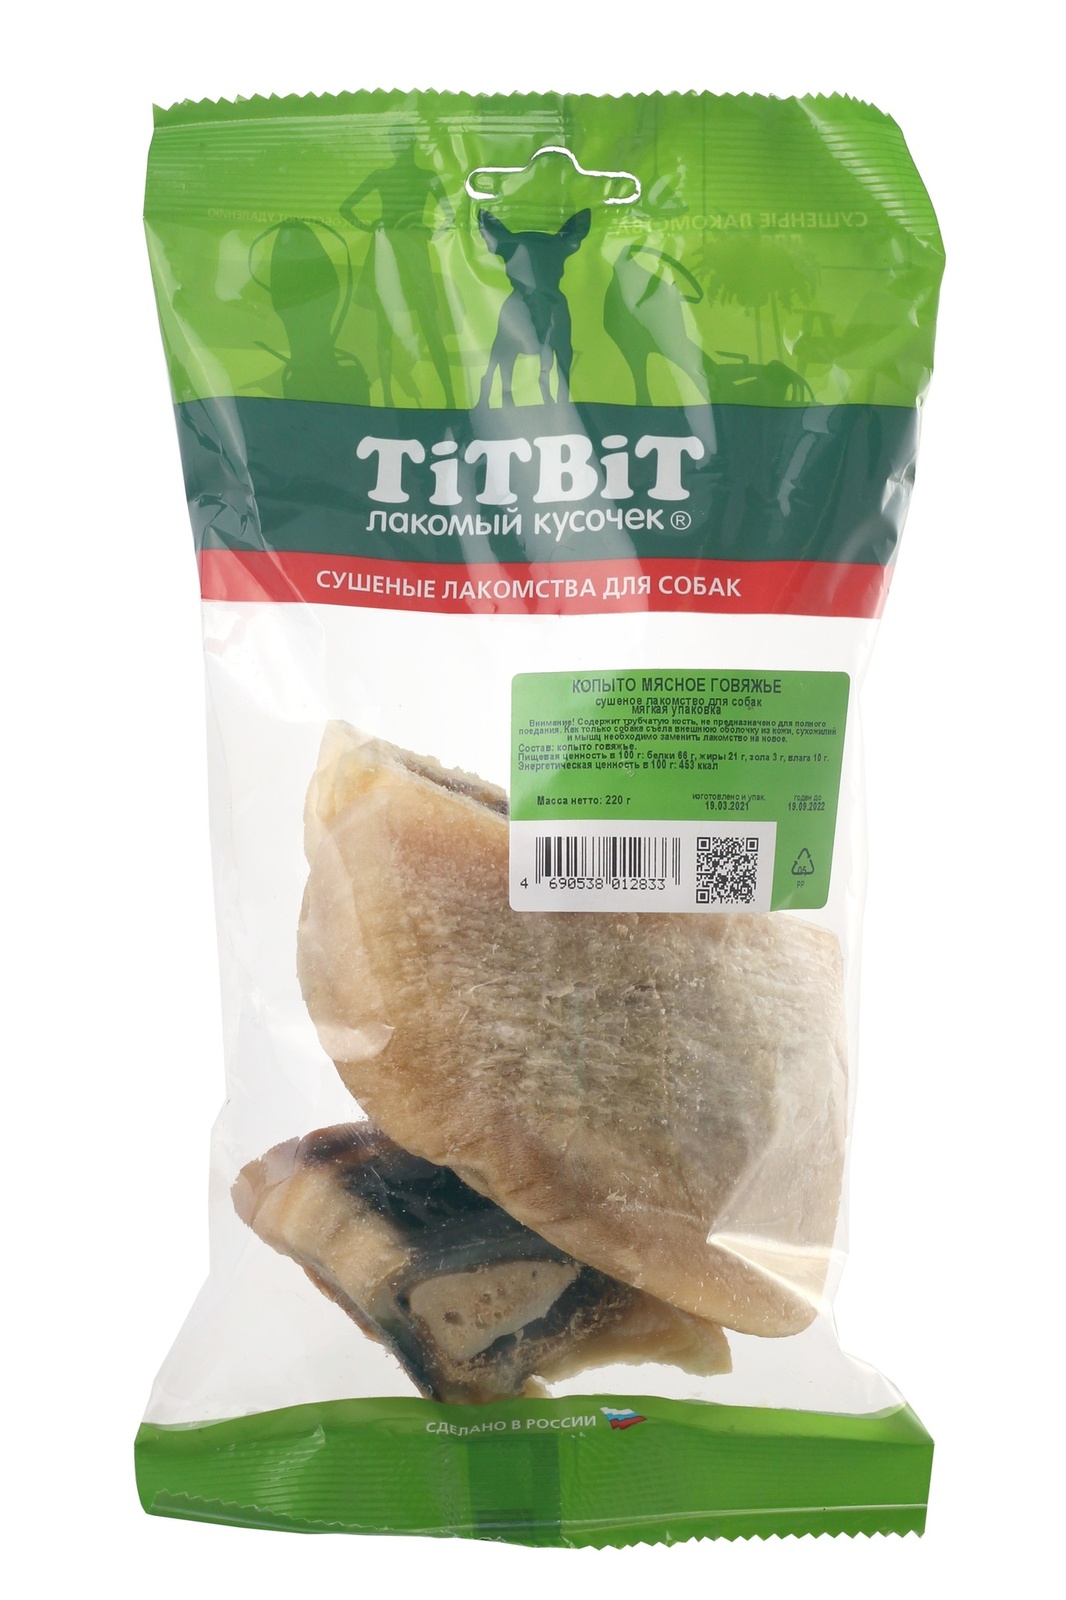 TiTBiT TiTBiT копыто мясное говяжье (220 г) titbit titbit копыто мясное гов мягкая упаковк 287 г